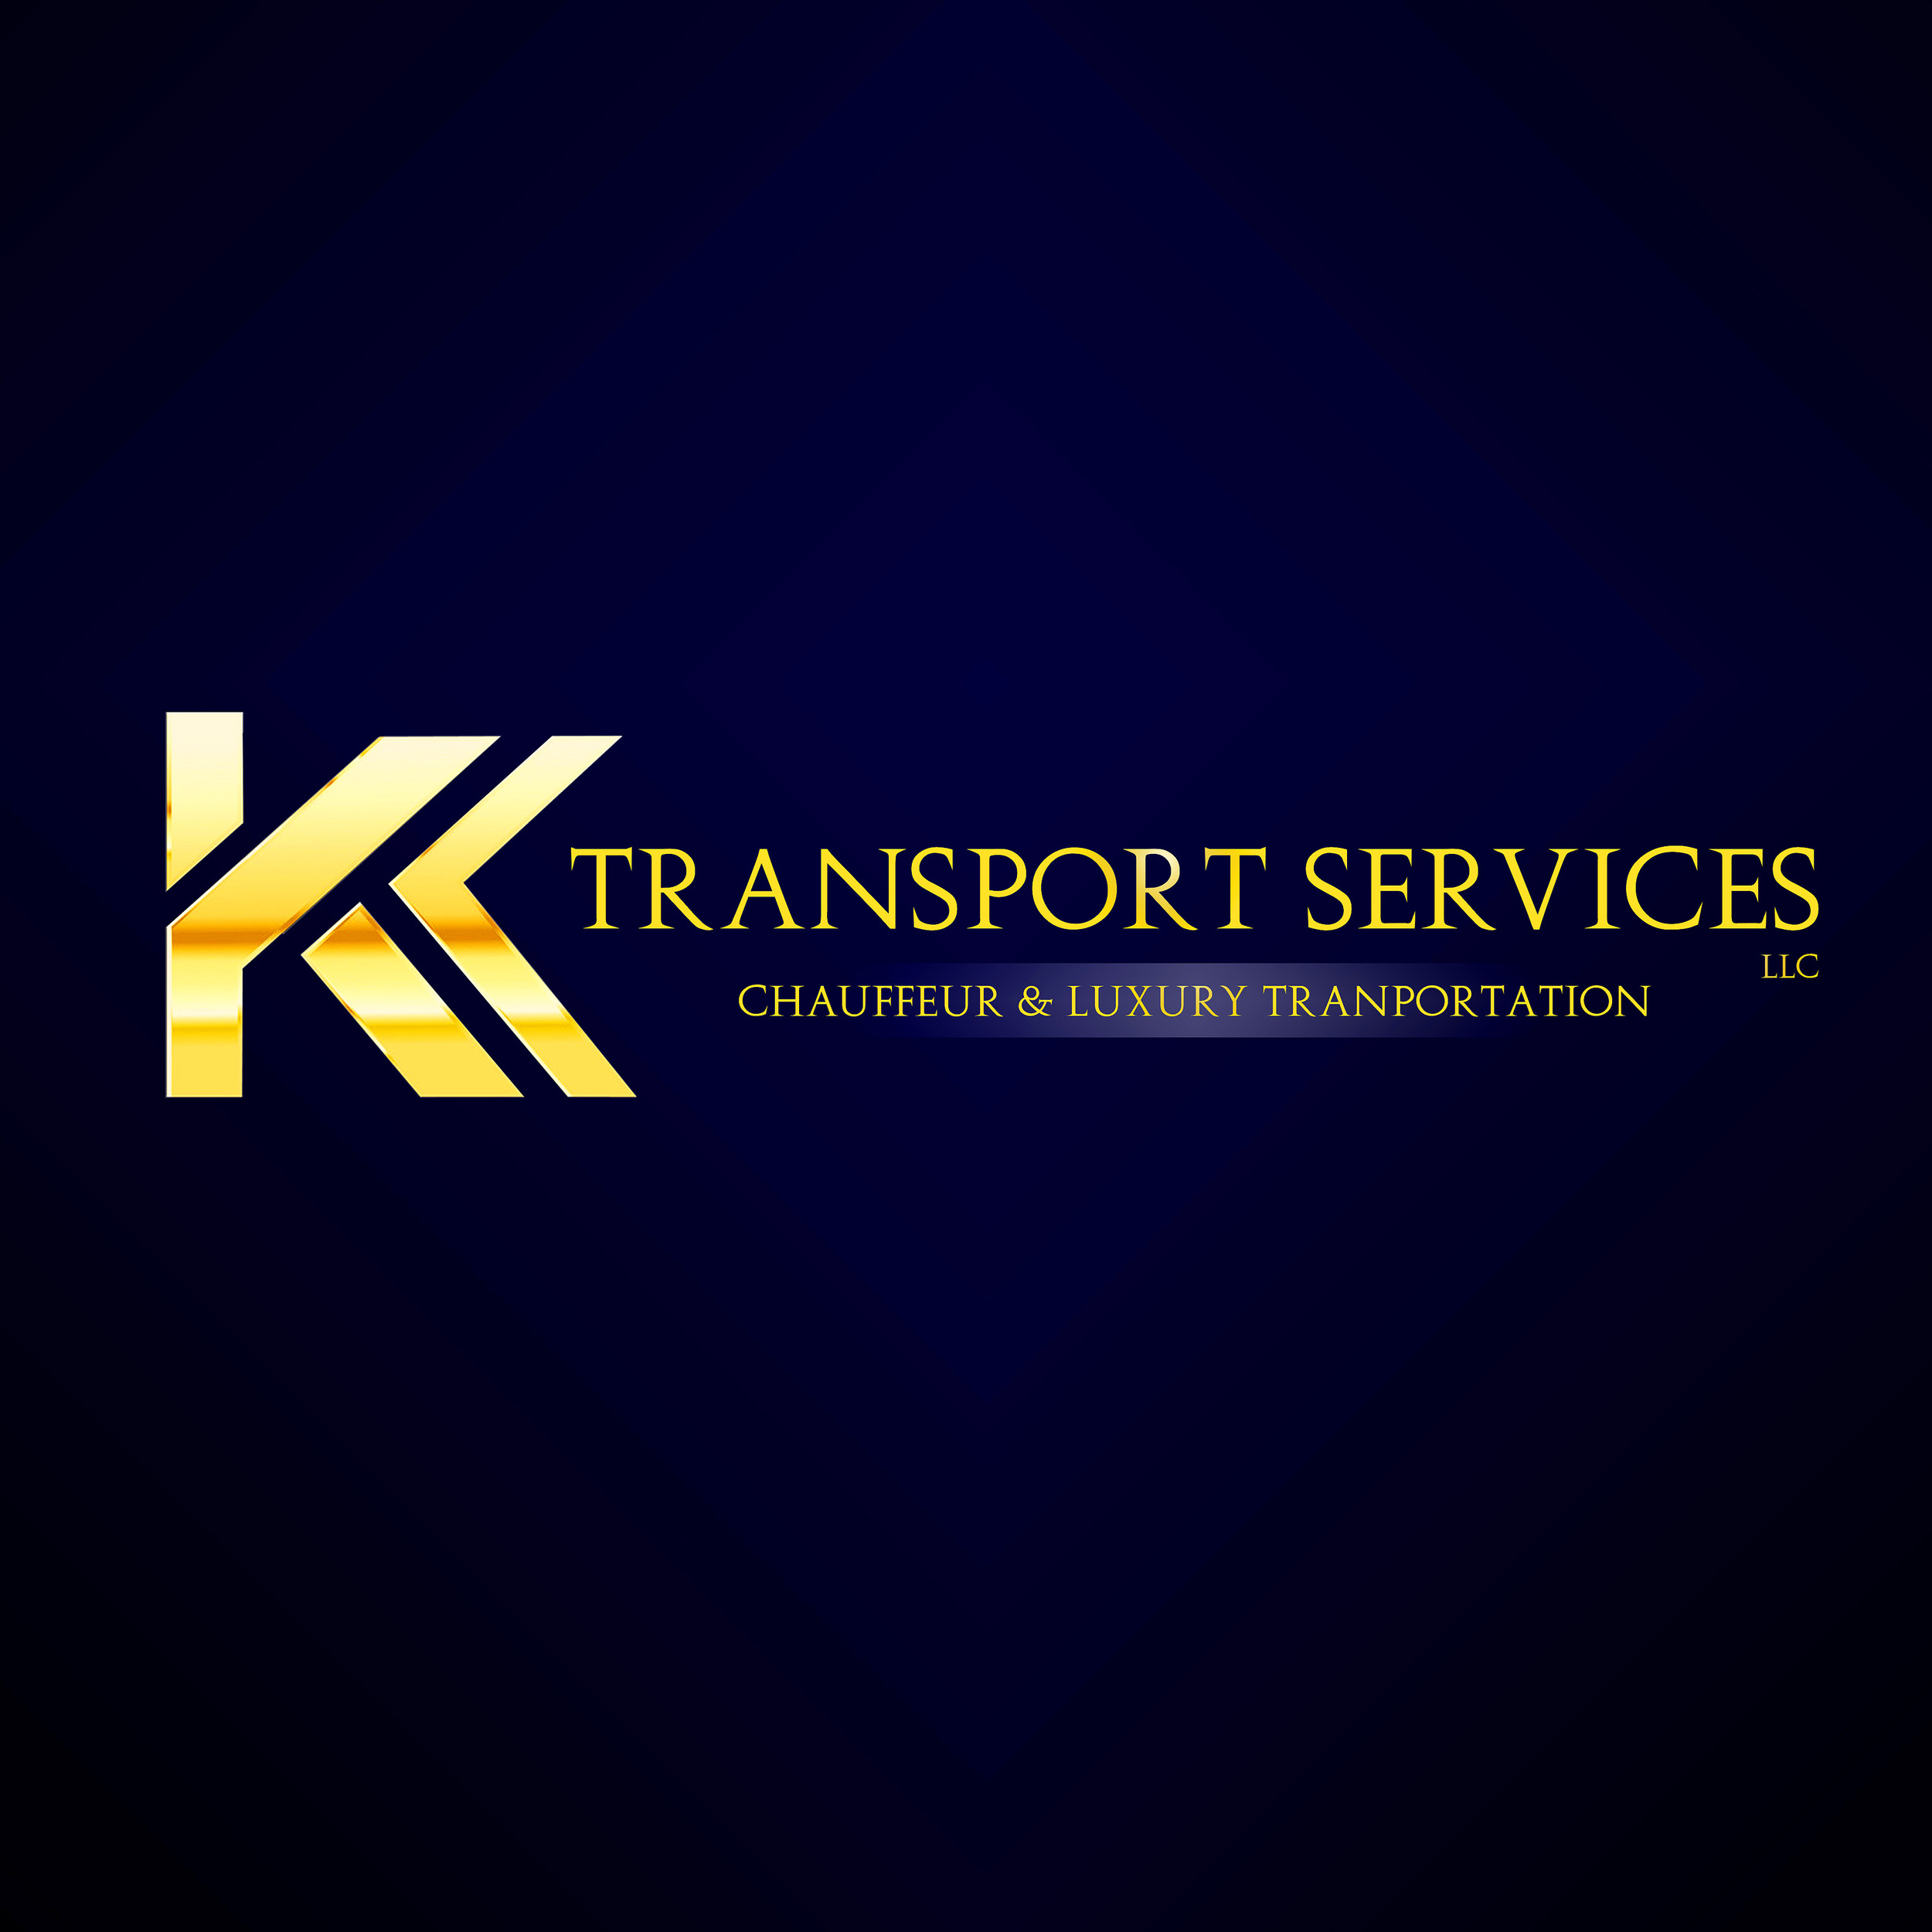 Services | kktransportservice